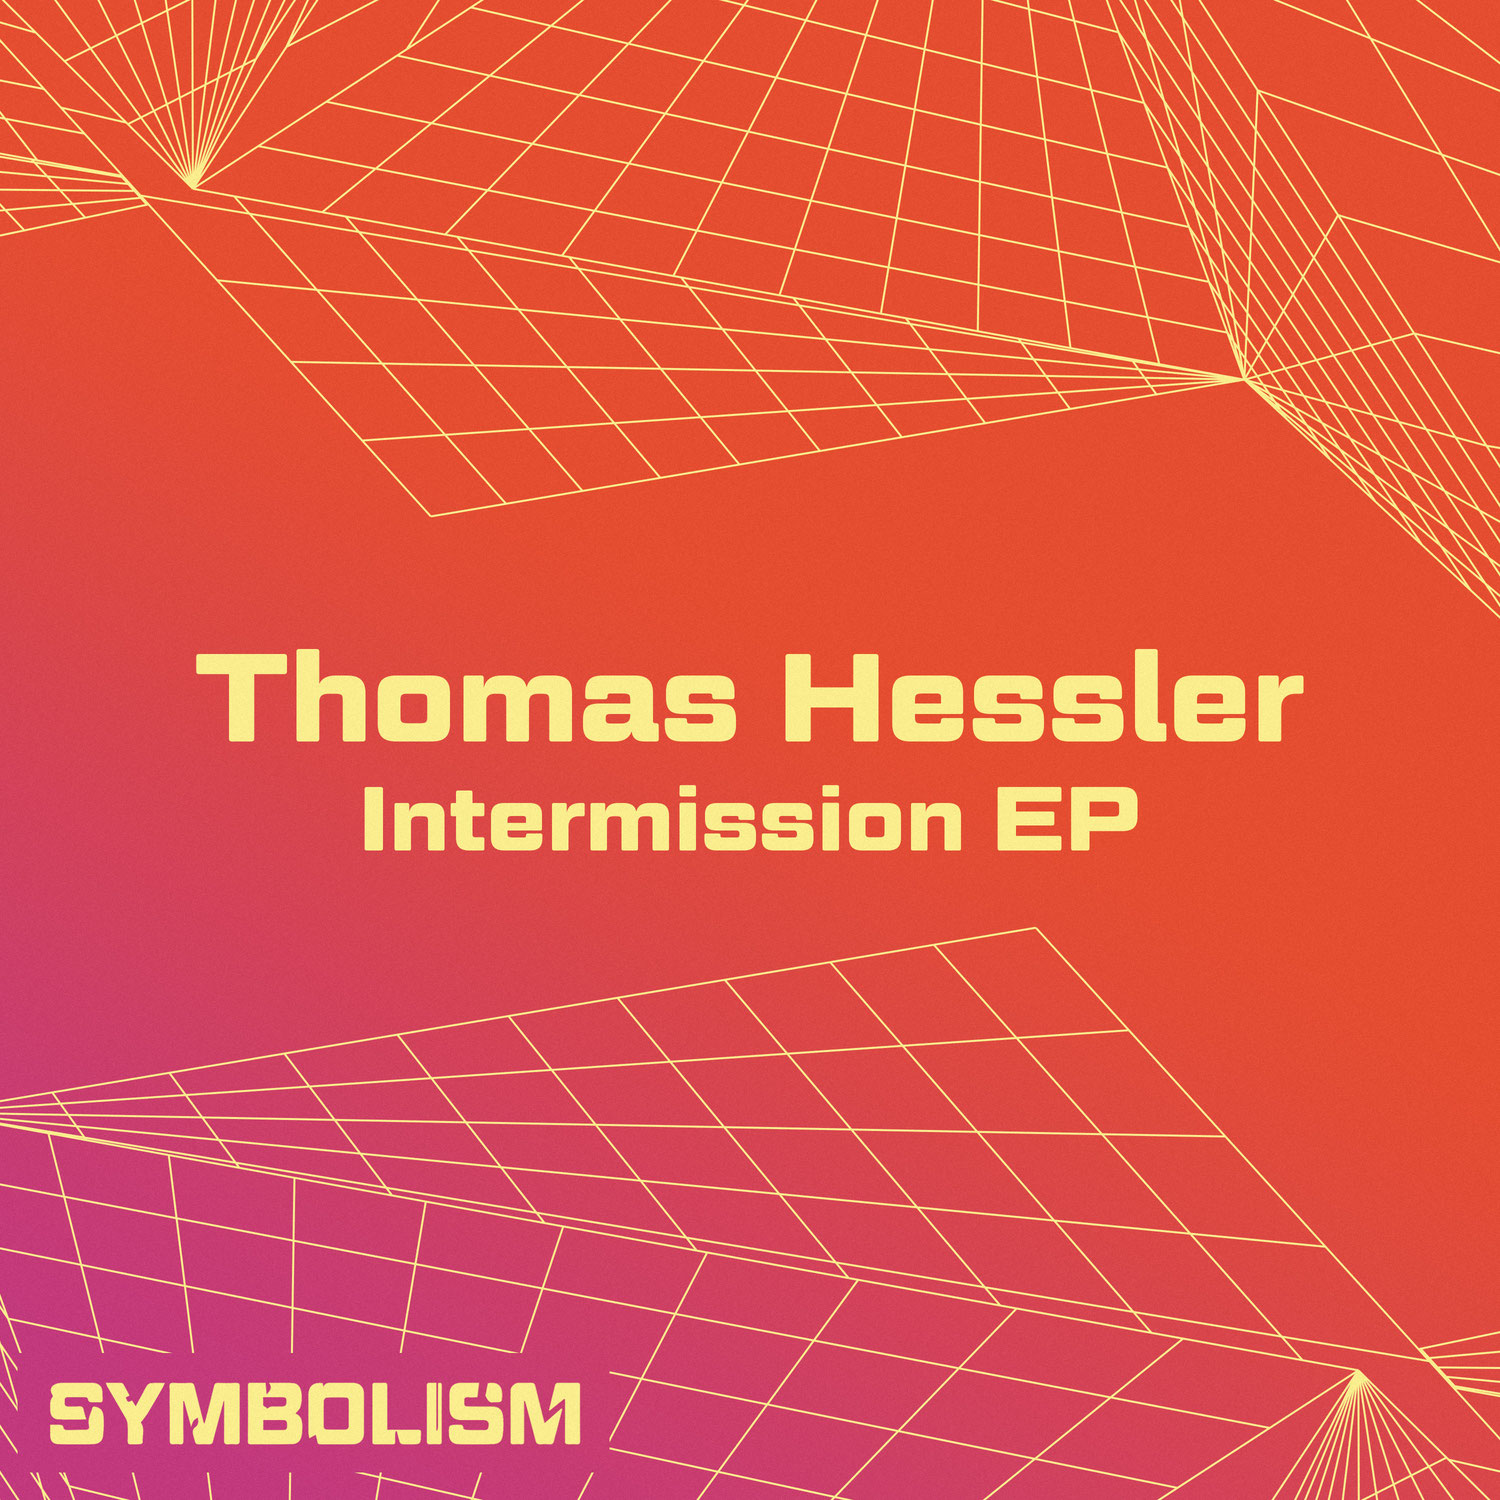 Thomas Hessler